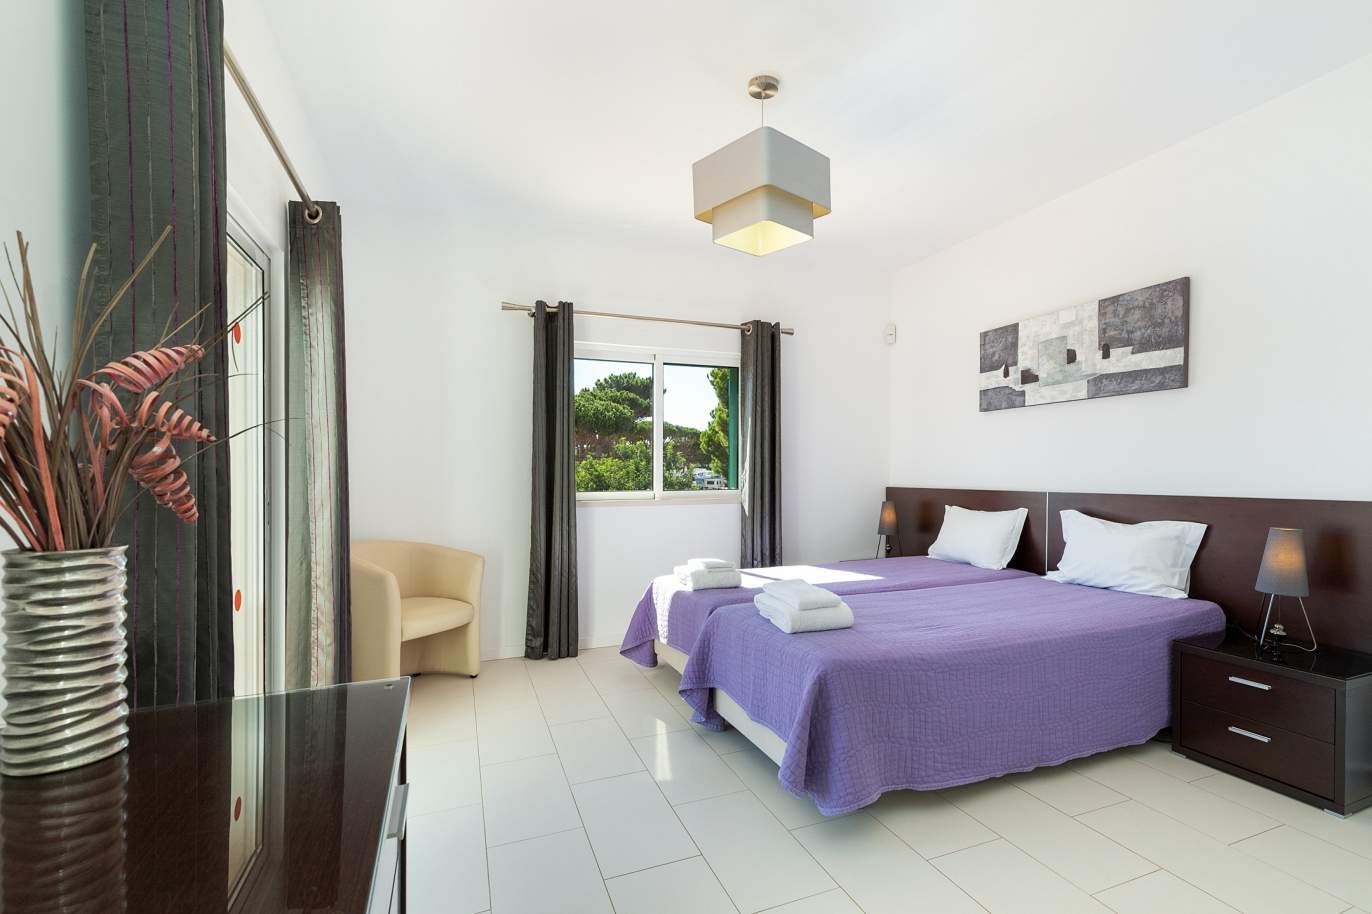 4 bedroom villa with pool and garden, Albufeira, Algarve_180568